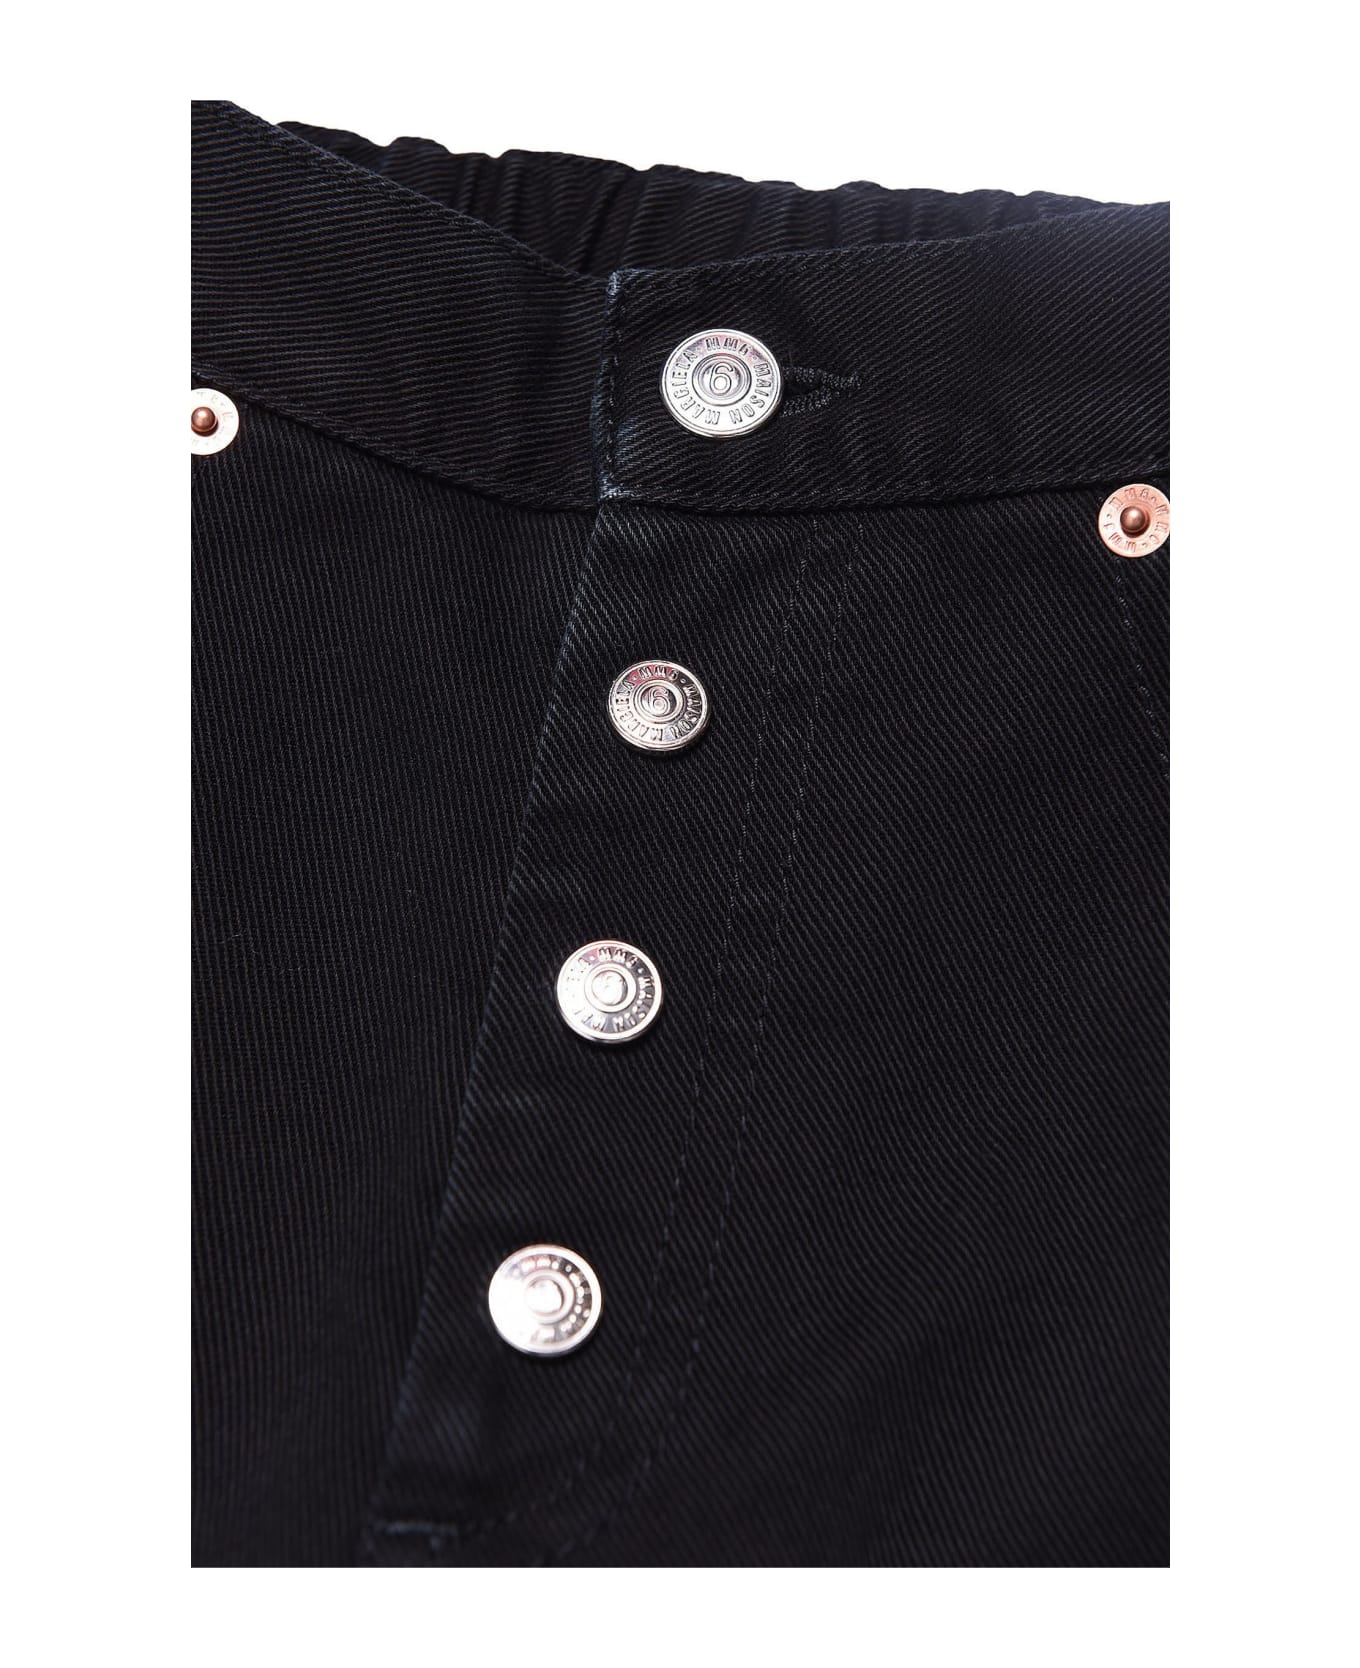 MM6 Maison Margiela Mm6p11u Trousers Maison Margiela Black Vintage-effect Cotton Jeans - Black